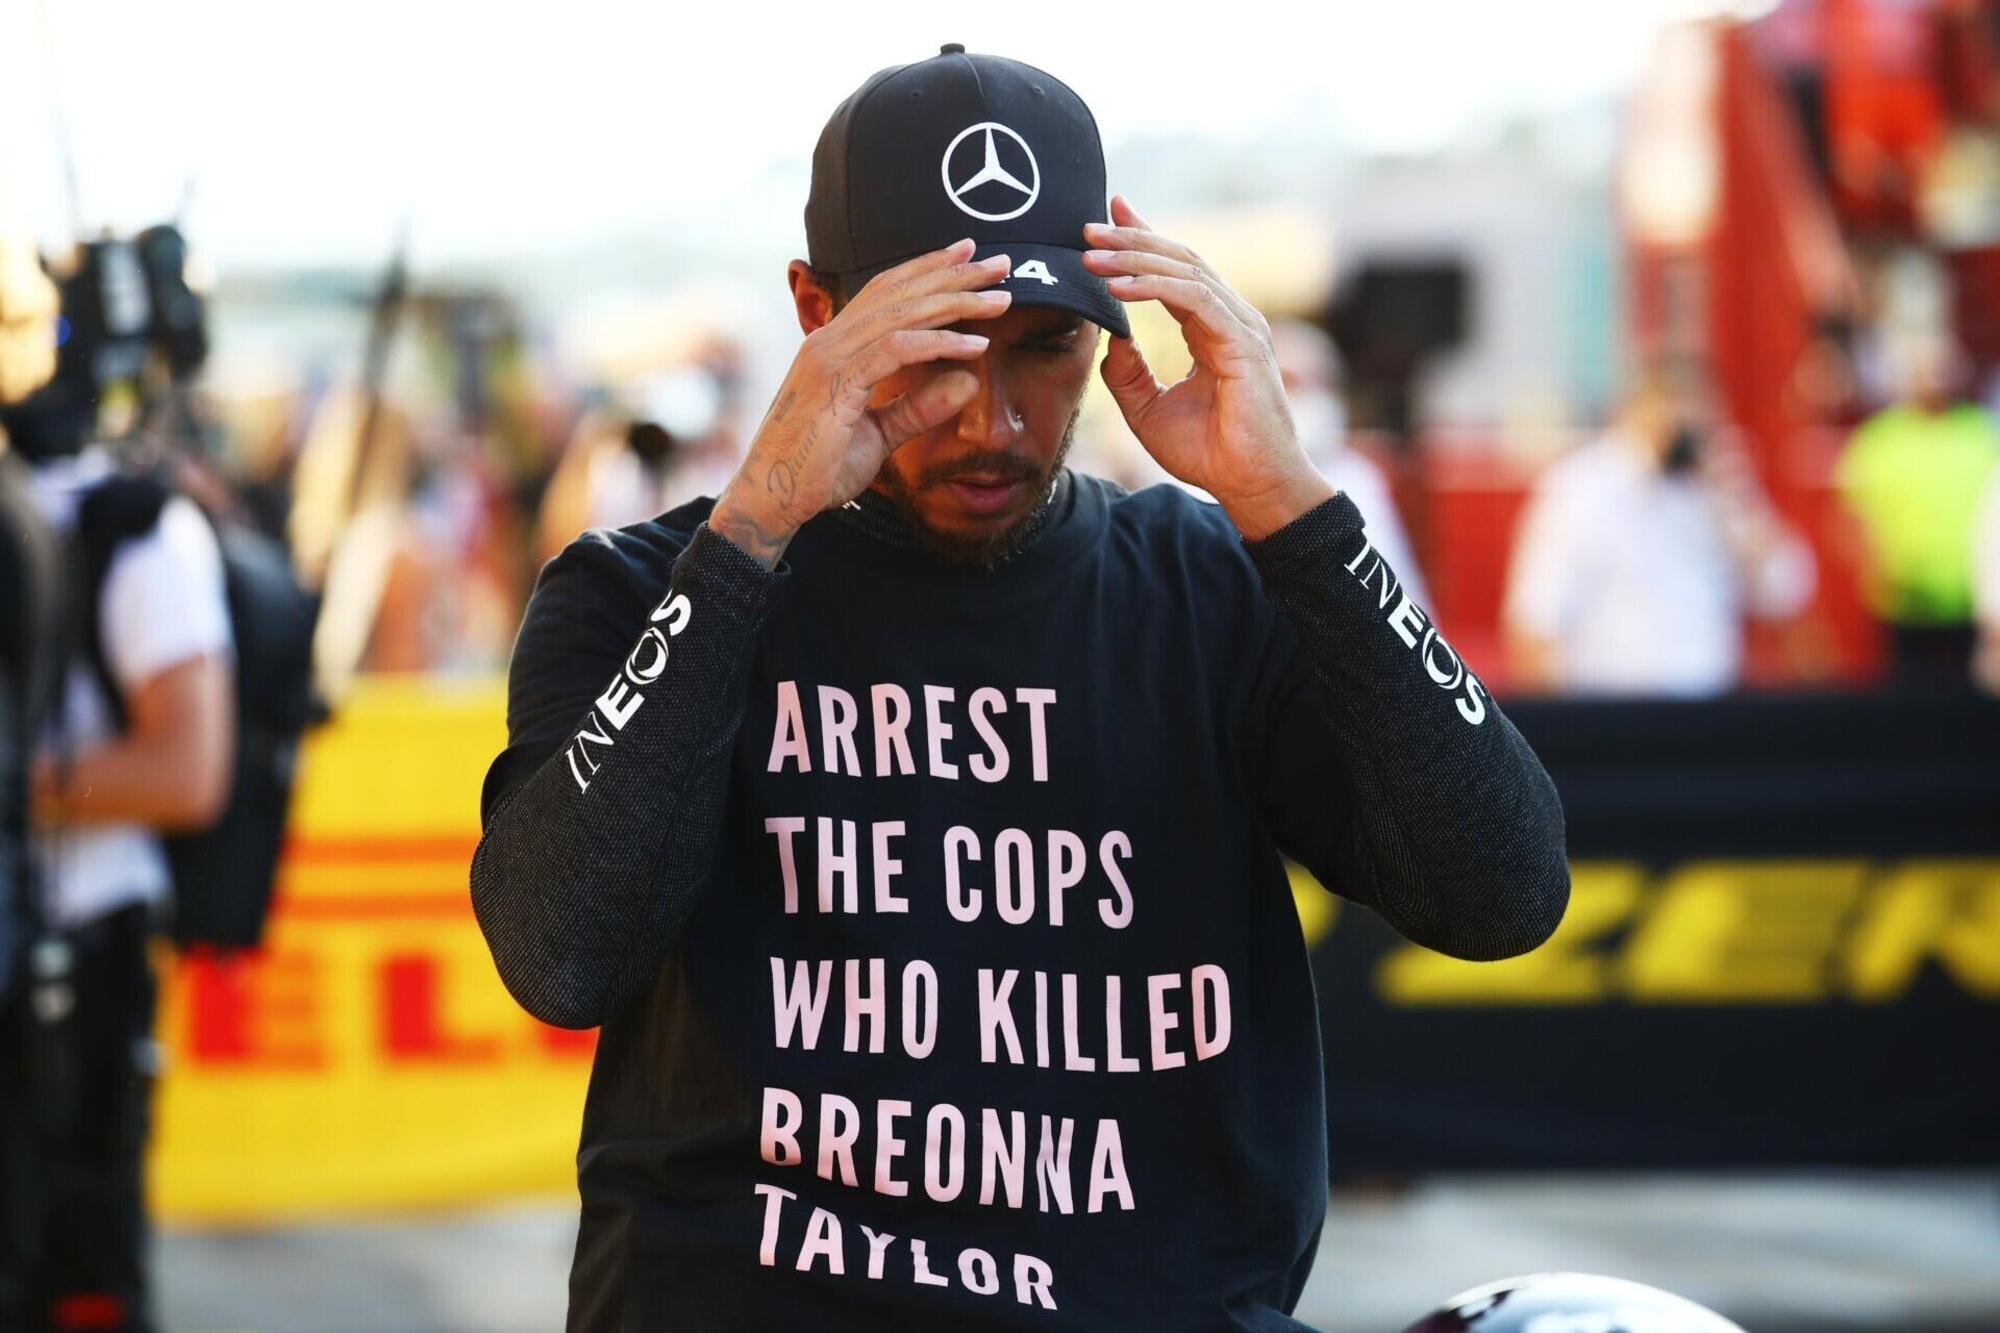 Lewis Hamilton con una maglietta contro gli agenti di polizia che avrebbero uccido Breonna Taylor